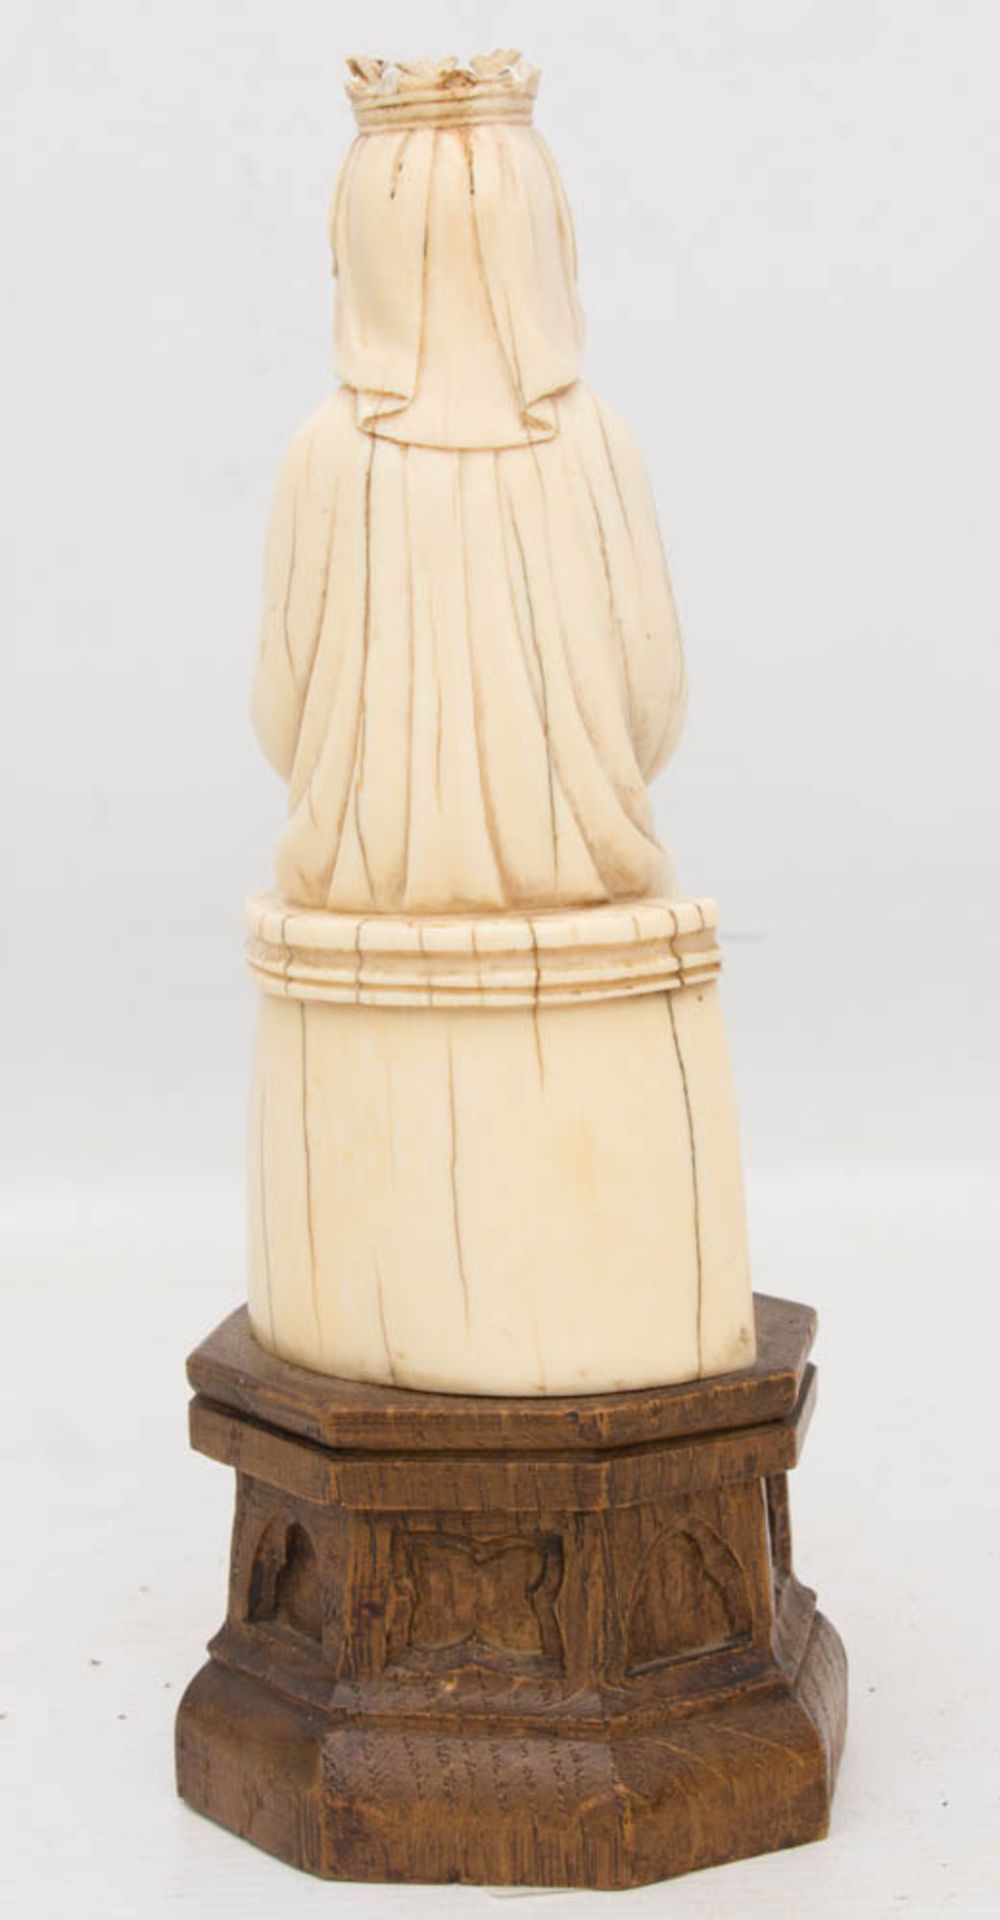 MADONNEN-FIGUR, Bein/Holz beschnitzt, um 1850Fein geschnitzte Madonna aus Bein, Historismus um - Bild 3 aus 3